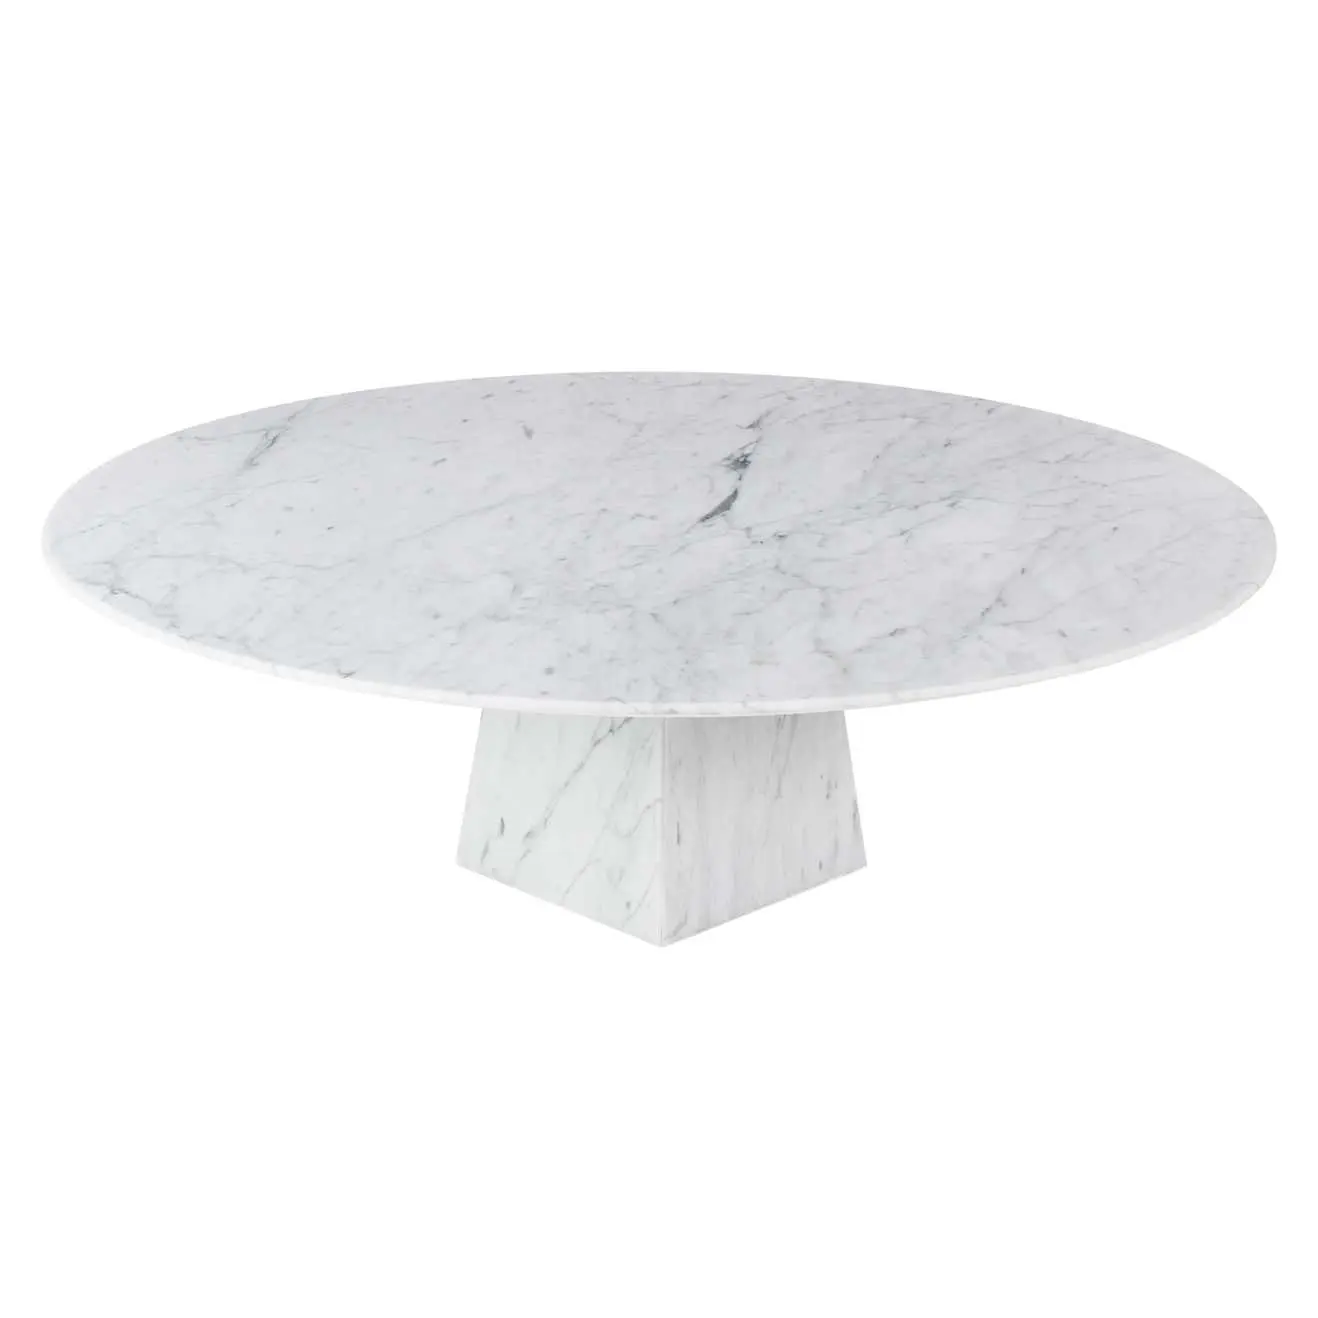 Mesa de centro redonda de mármol para sala de estar, mueble blanco de diseño Redondo y moderno, mesa redonda de mármol de Carrara ultrafina